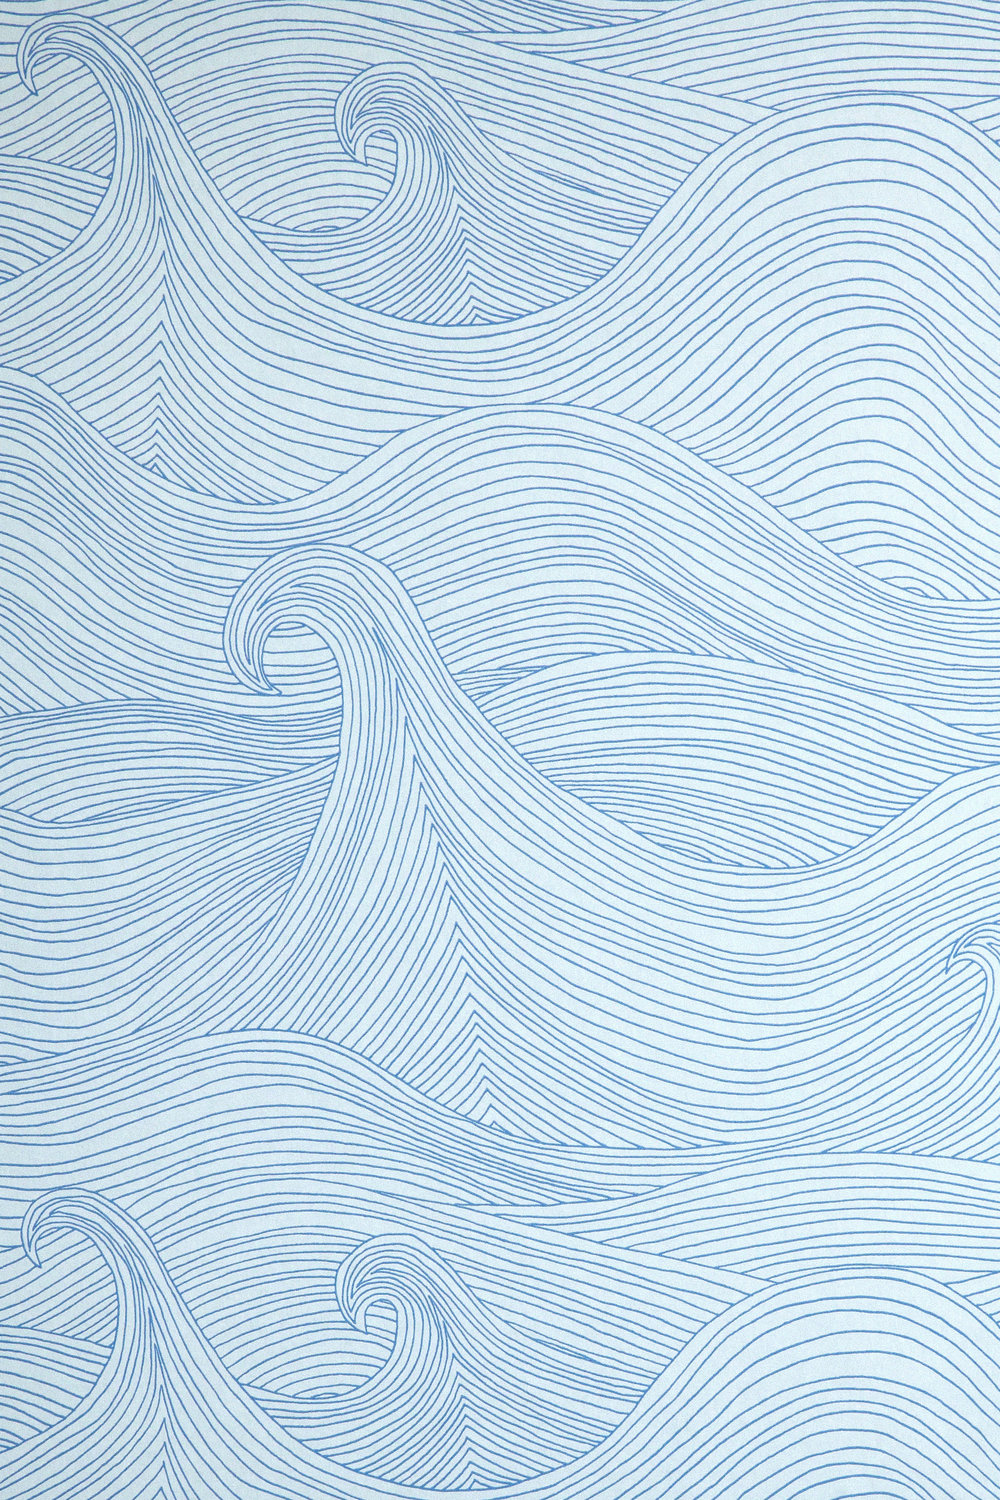 Seascape Summer - HD Wallpaper 